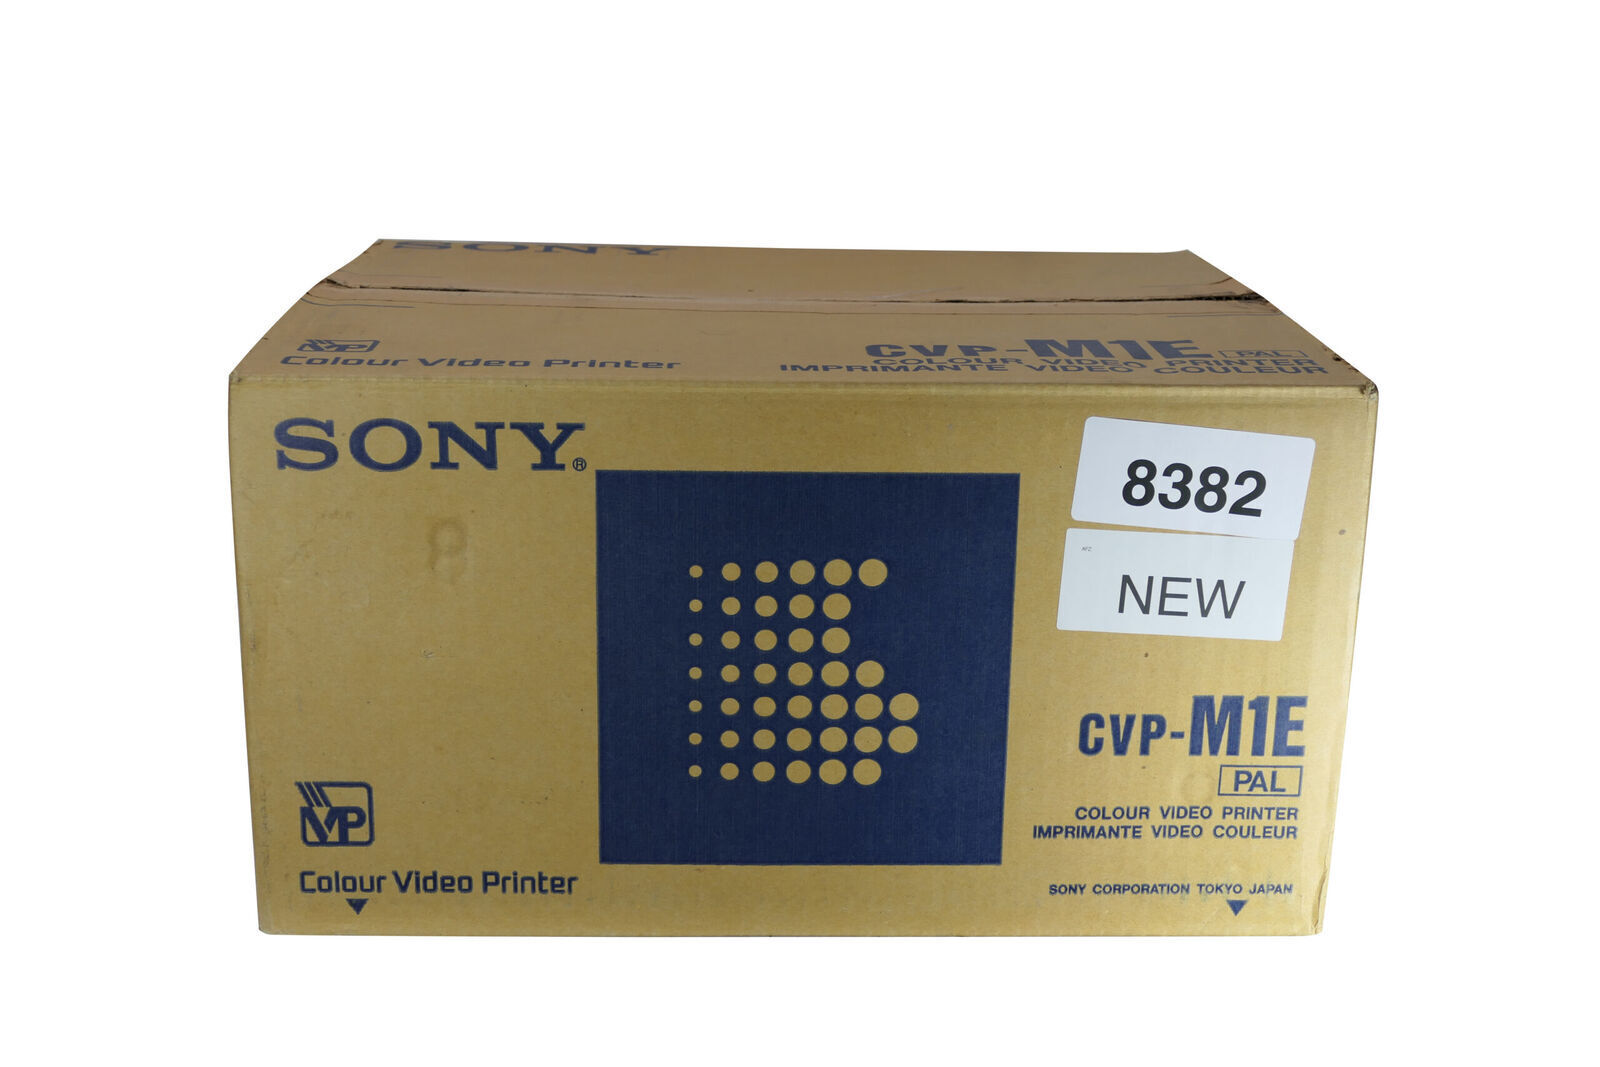 Sony CVP-M1E | Color Video Printer | NEW IN BOX